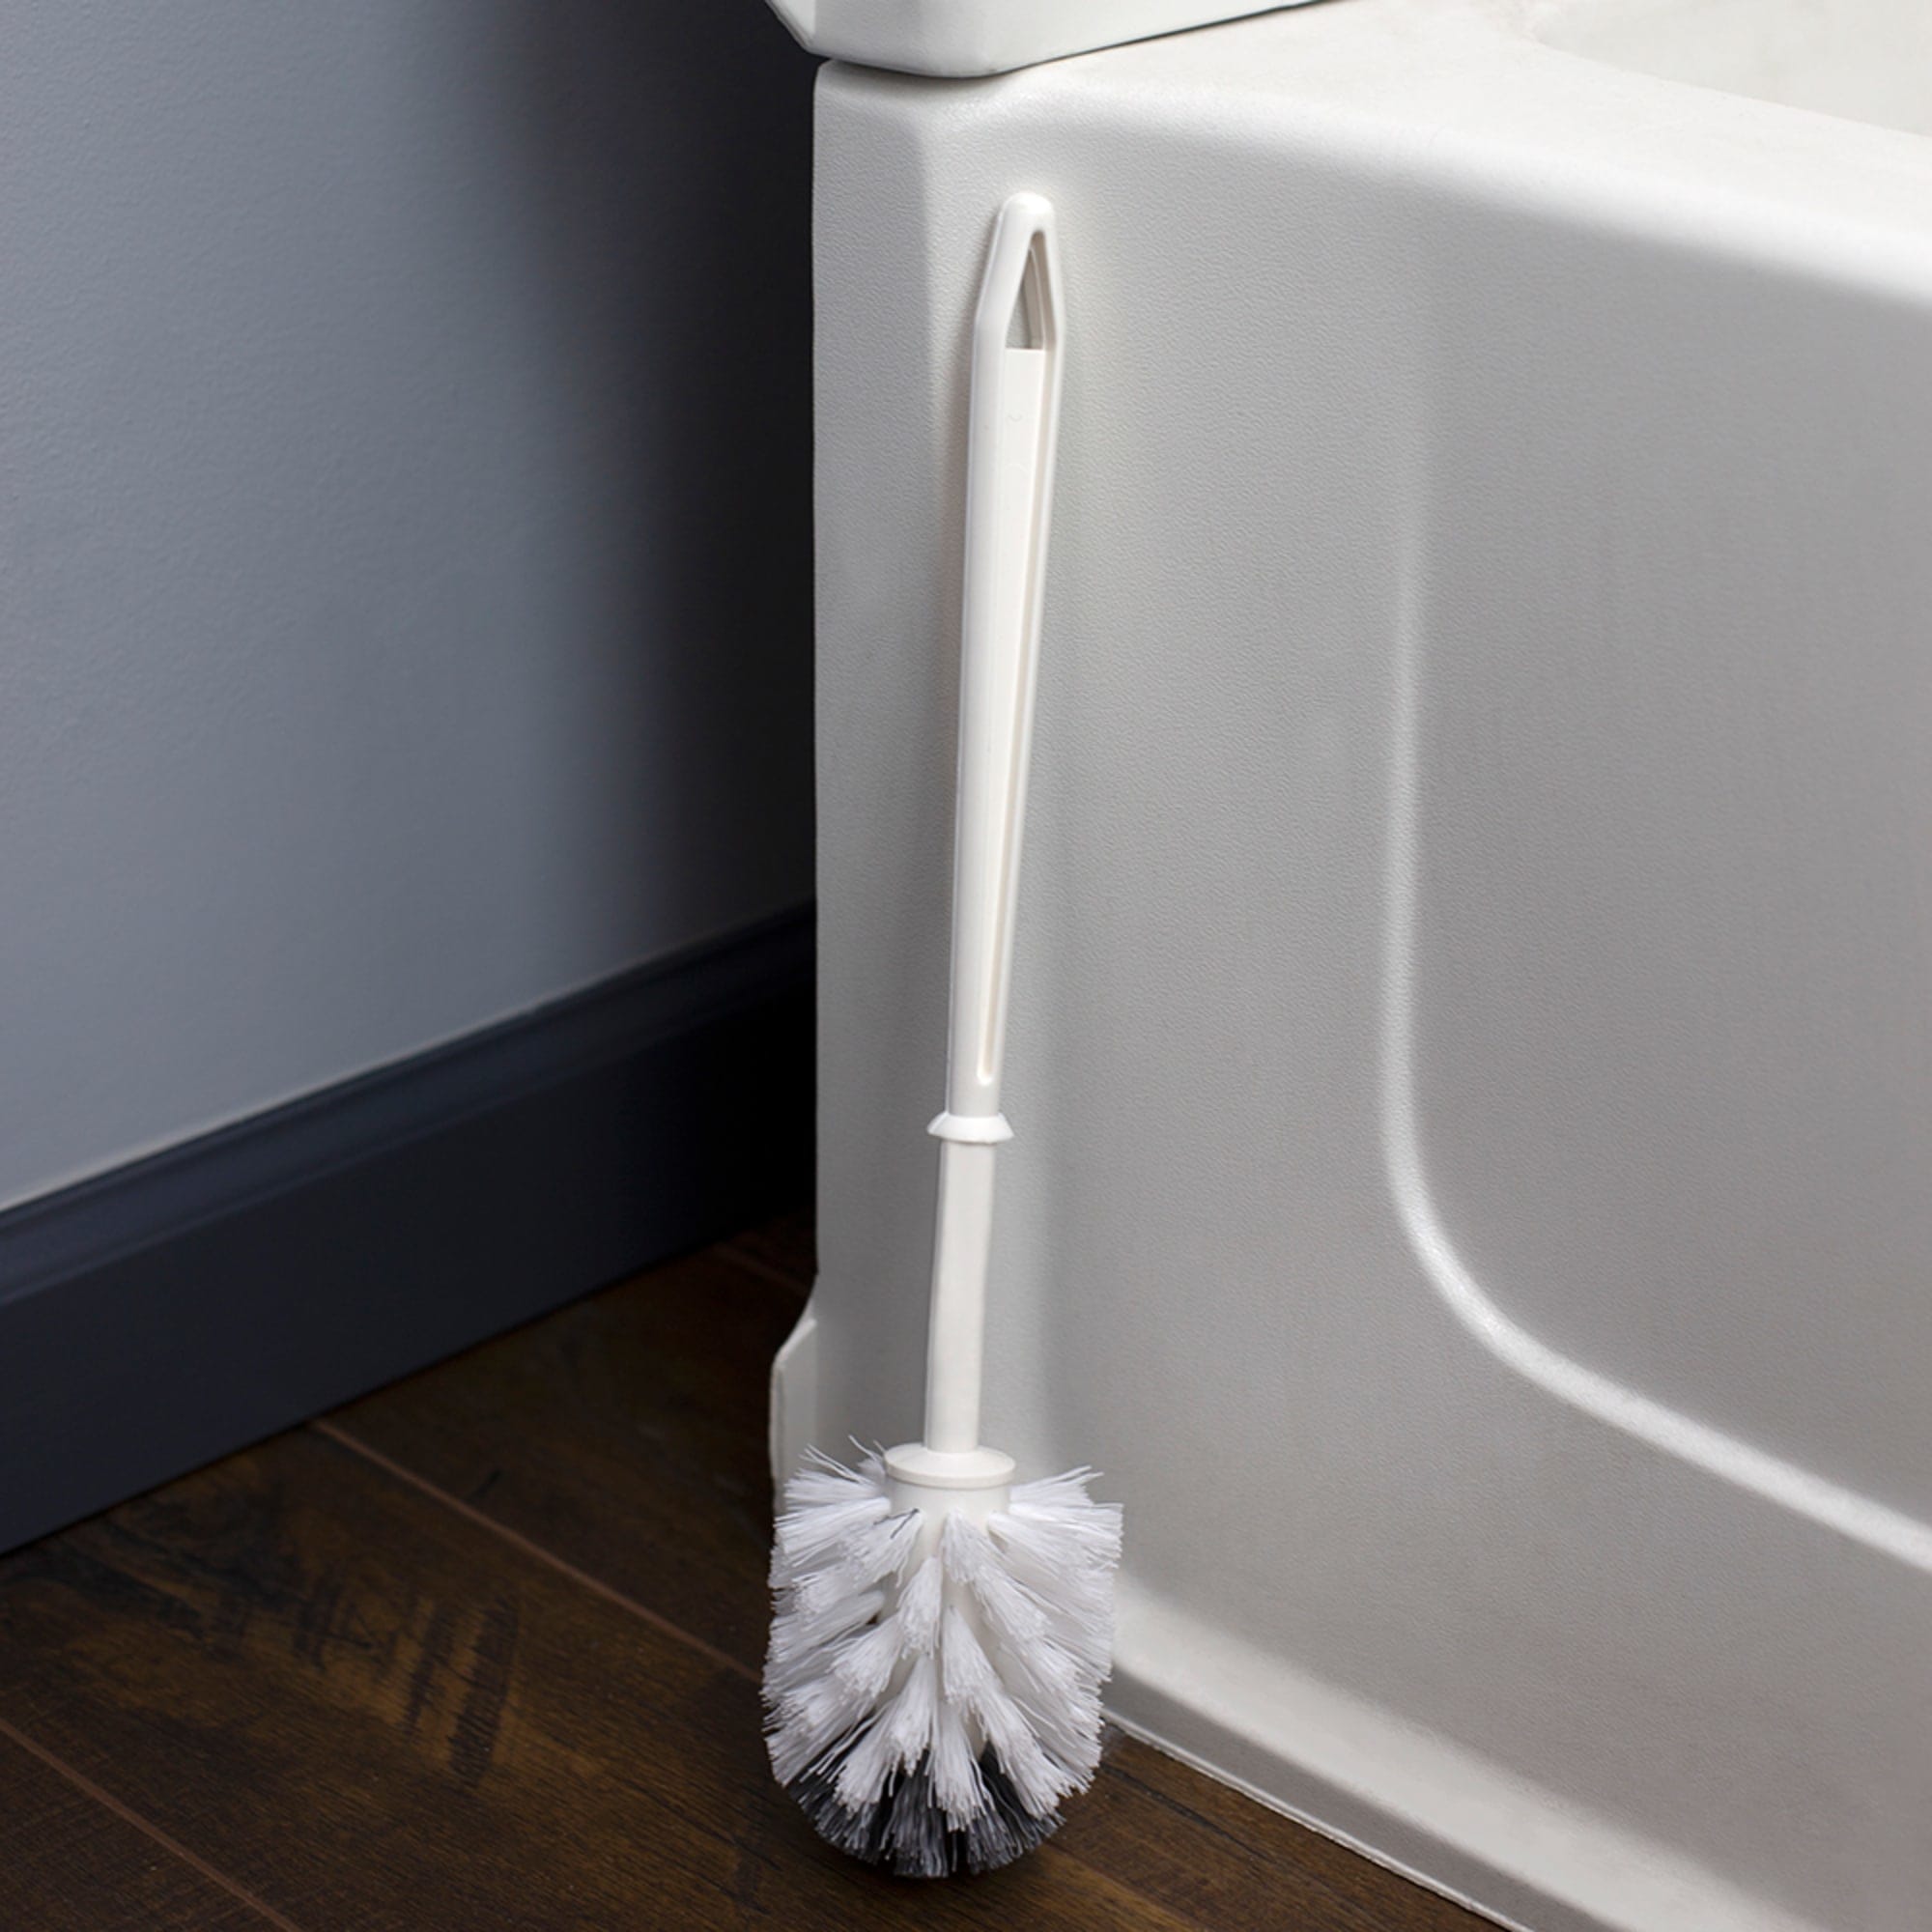 Home Basics Plastic Toilet Brush, White $1 EACH, CASE PACK OF 24